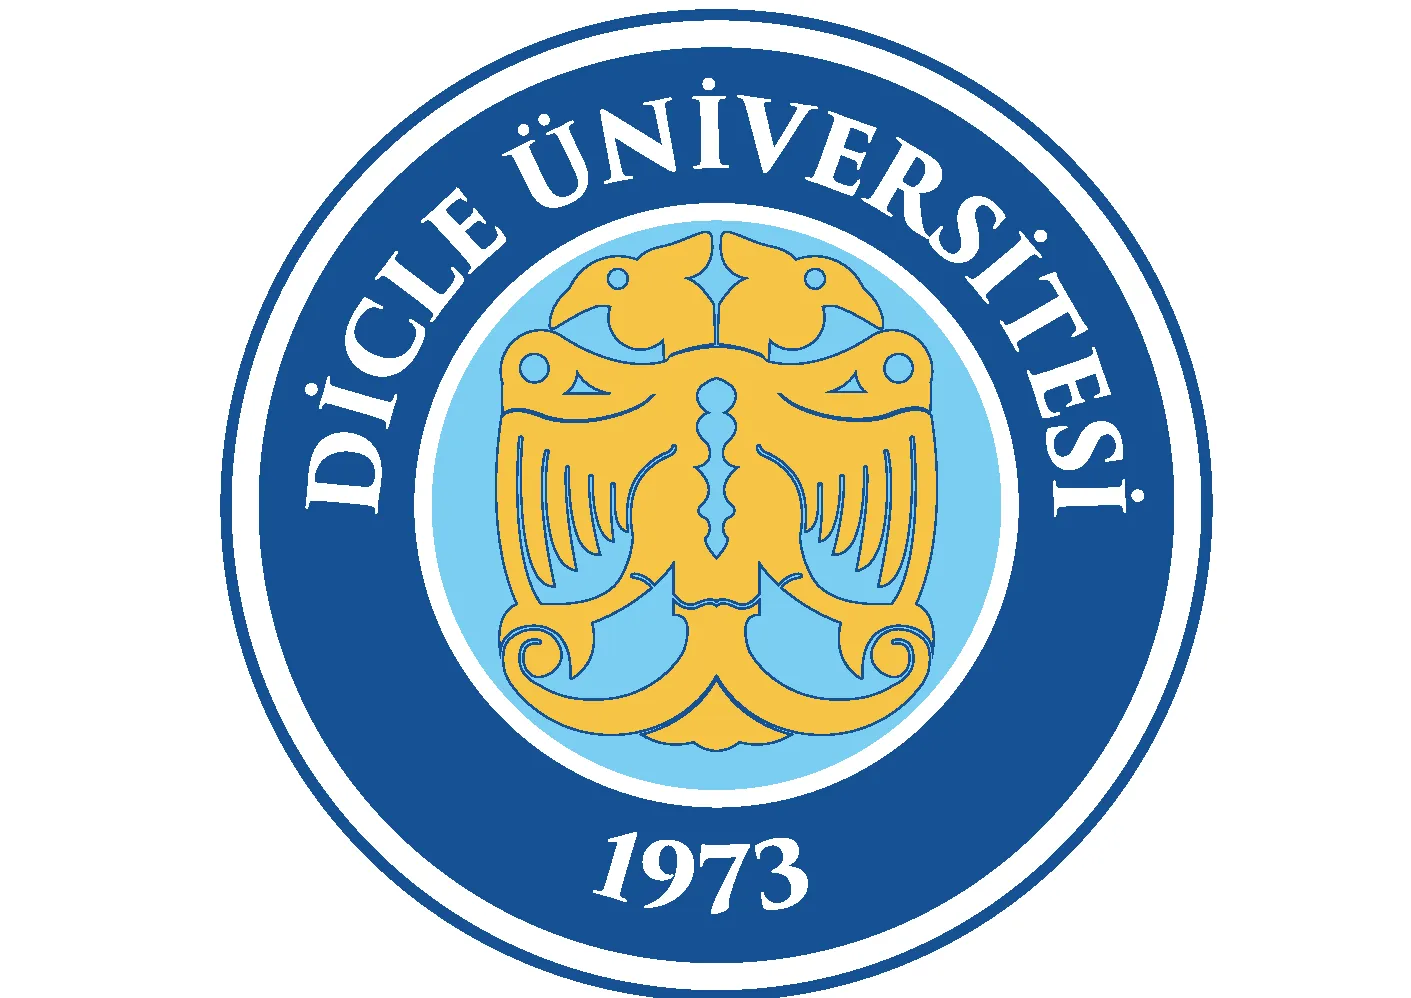 Dicle Üniversitesi 26 Öğretim üyesi ve 24 Öğretim Görevlisi alacaktır. Son başvuru tarihi 14 Ocak 2022